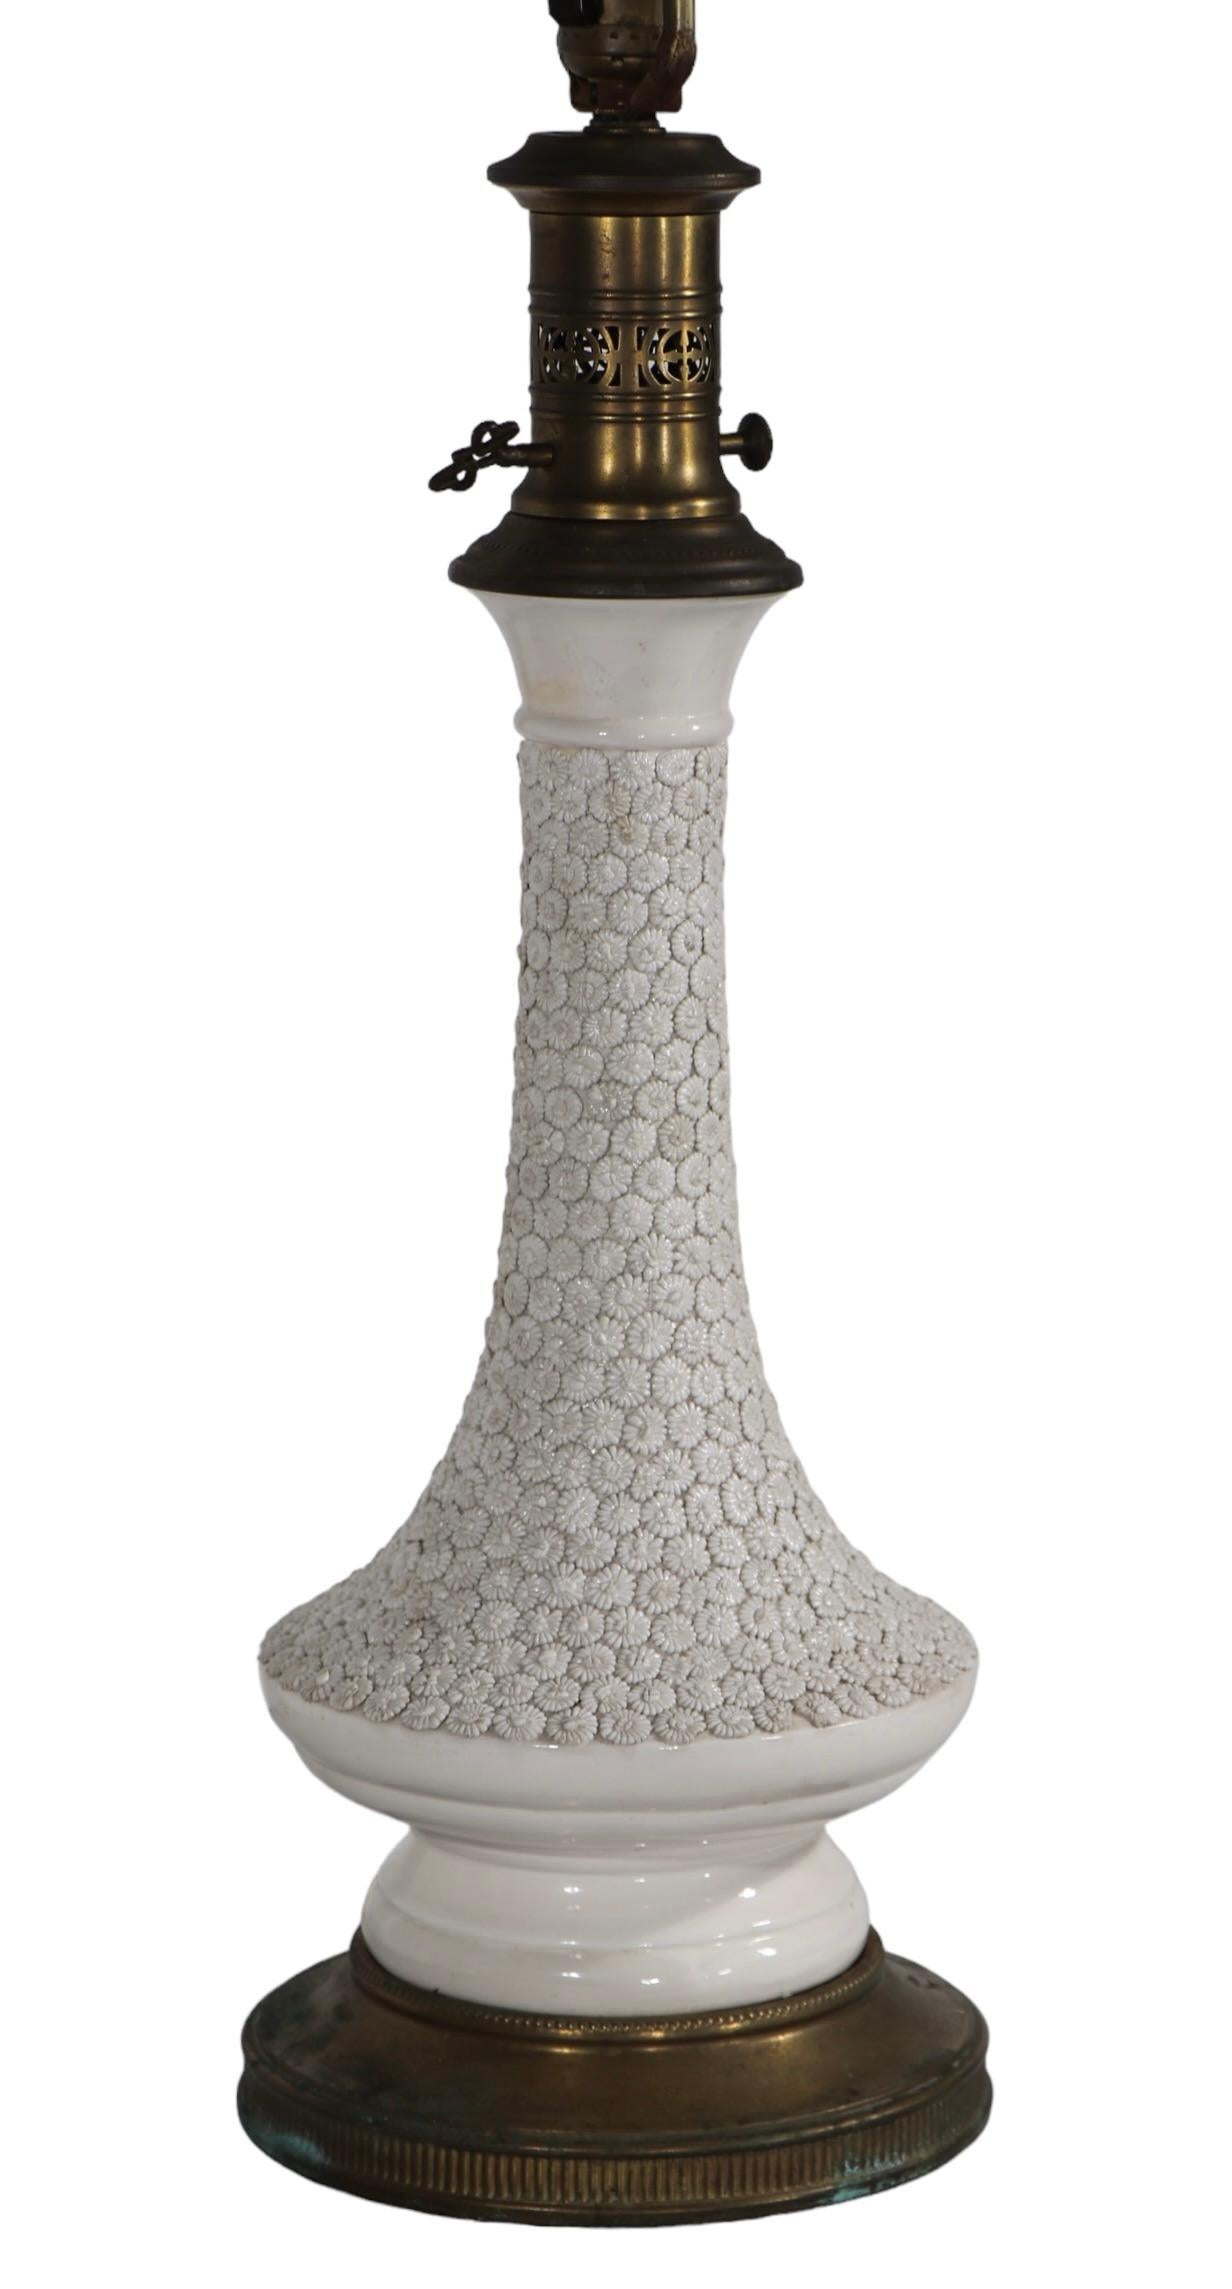 Pr. Decorative Blanc de Chine Style Table Lamps by Paul Hanson c 1960's For Sale 7